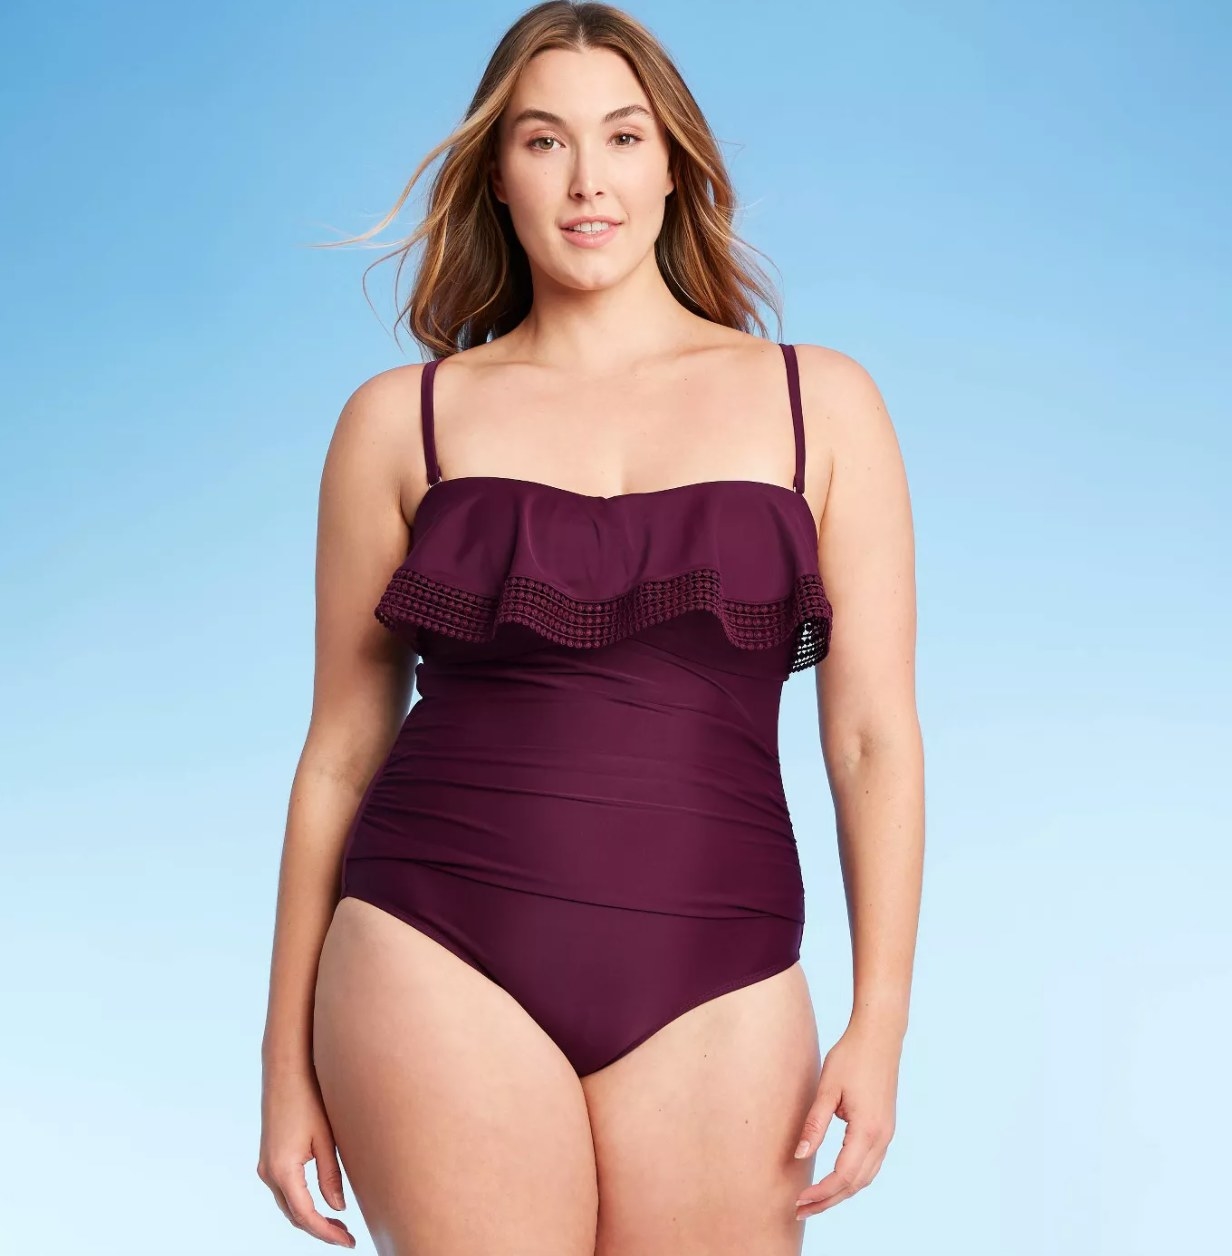 model wearing the purple ruffled swimsuit